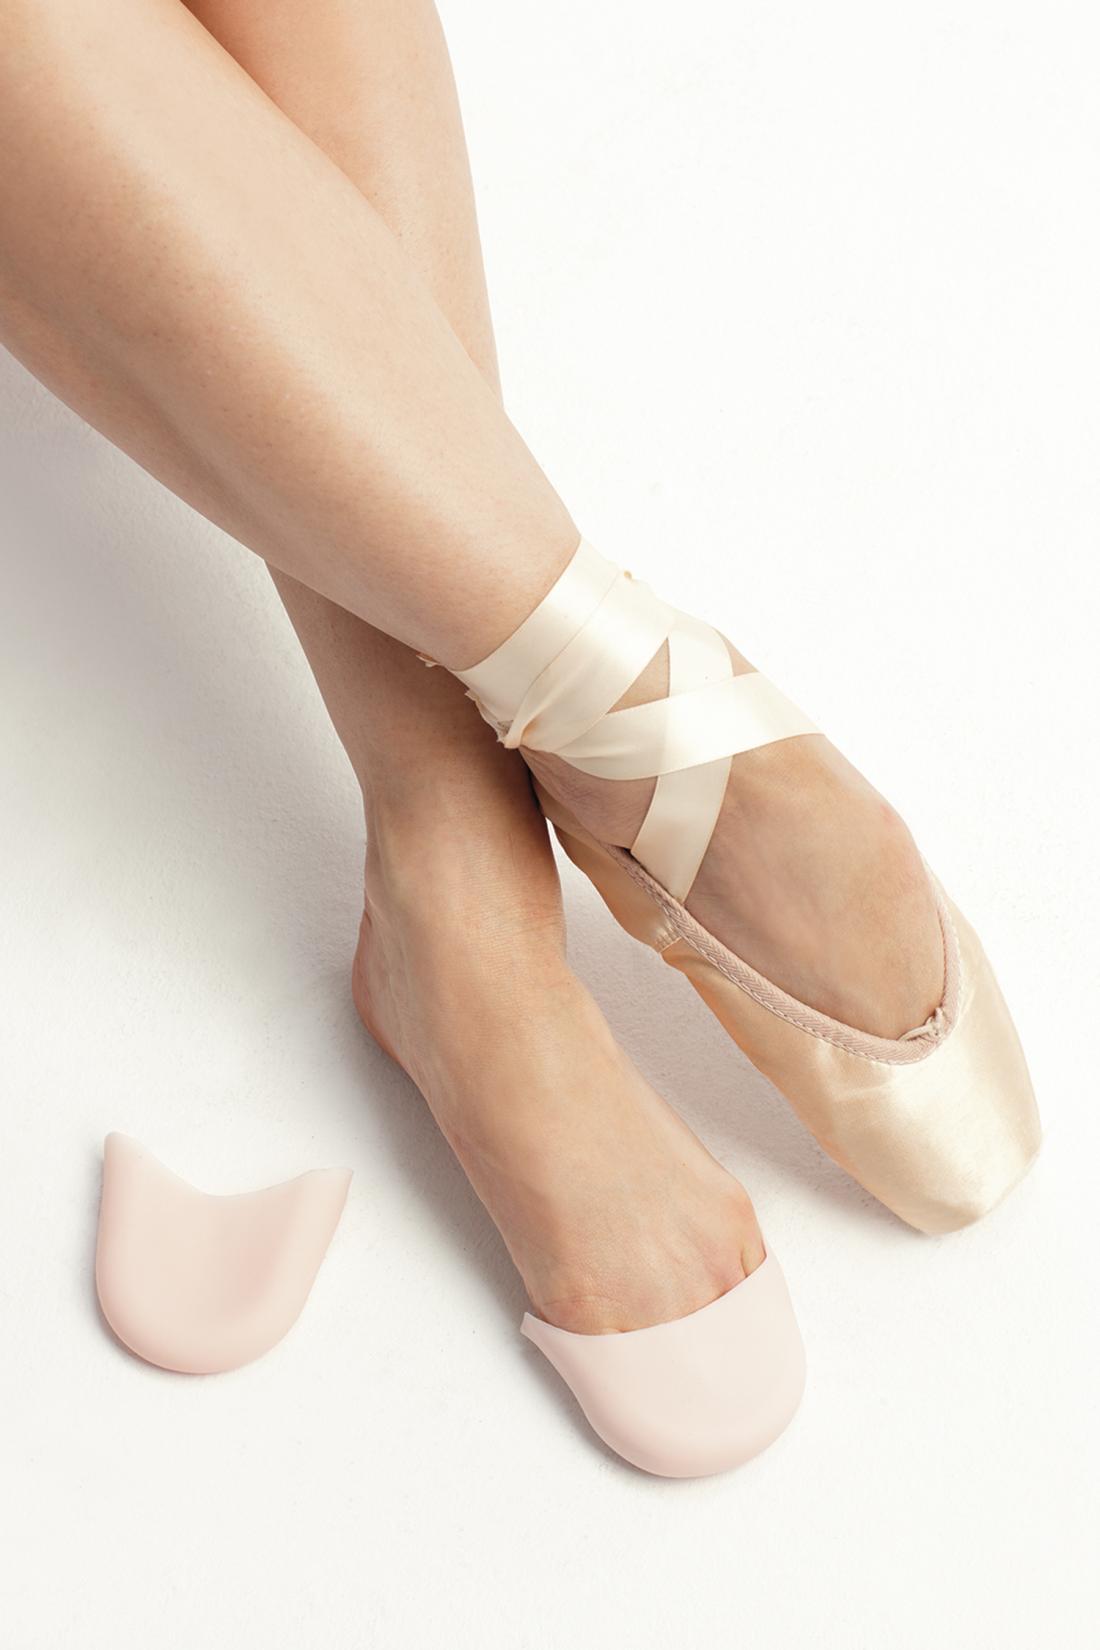 Damen Mädchen Ballett Tanz Pointe Schuhe Gehörschutz Silikon Gel Toe Pads 2 Farben